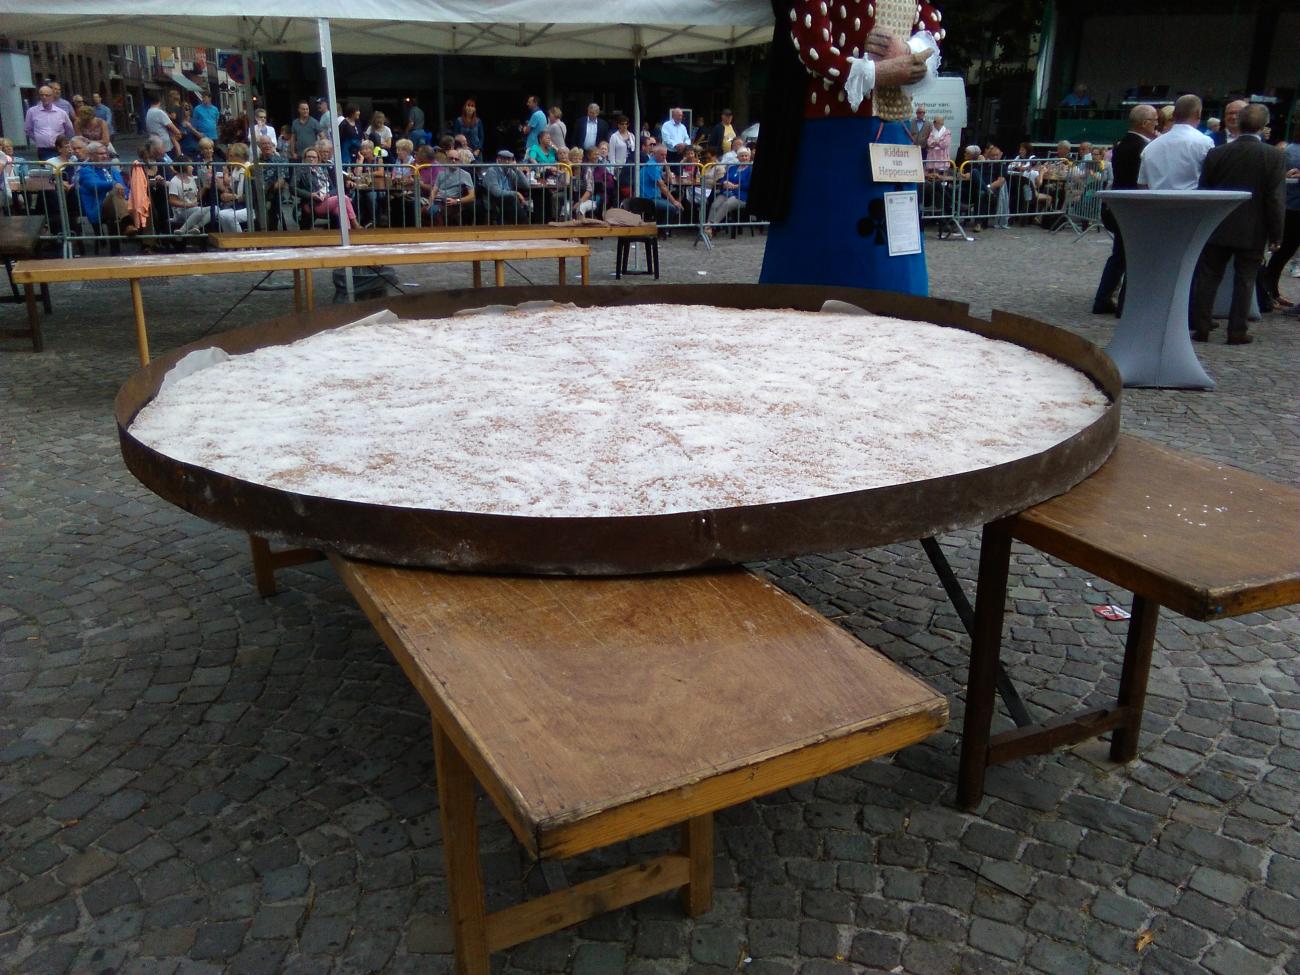 Grote knapkoek (2,5m) gebakken op markt van Maaseik